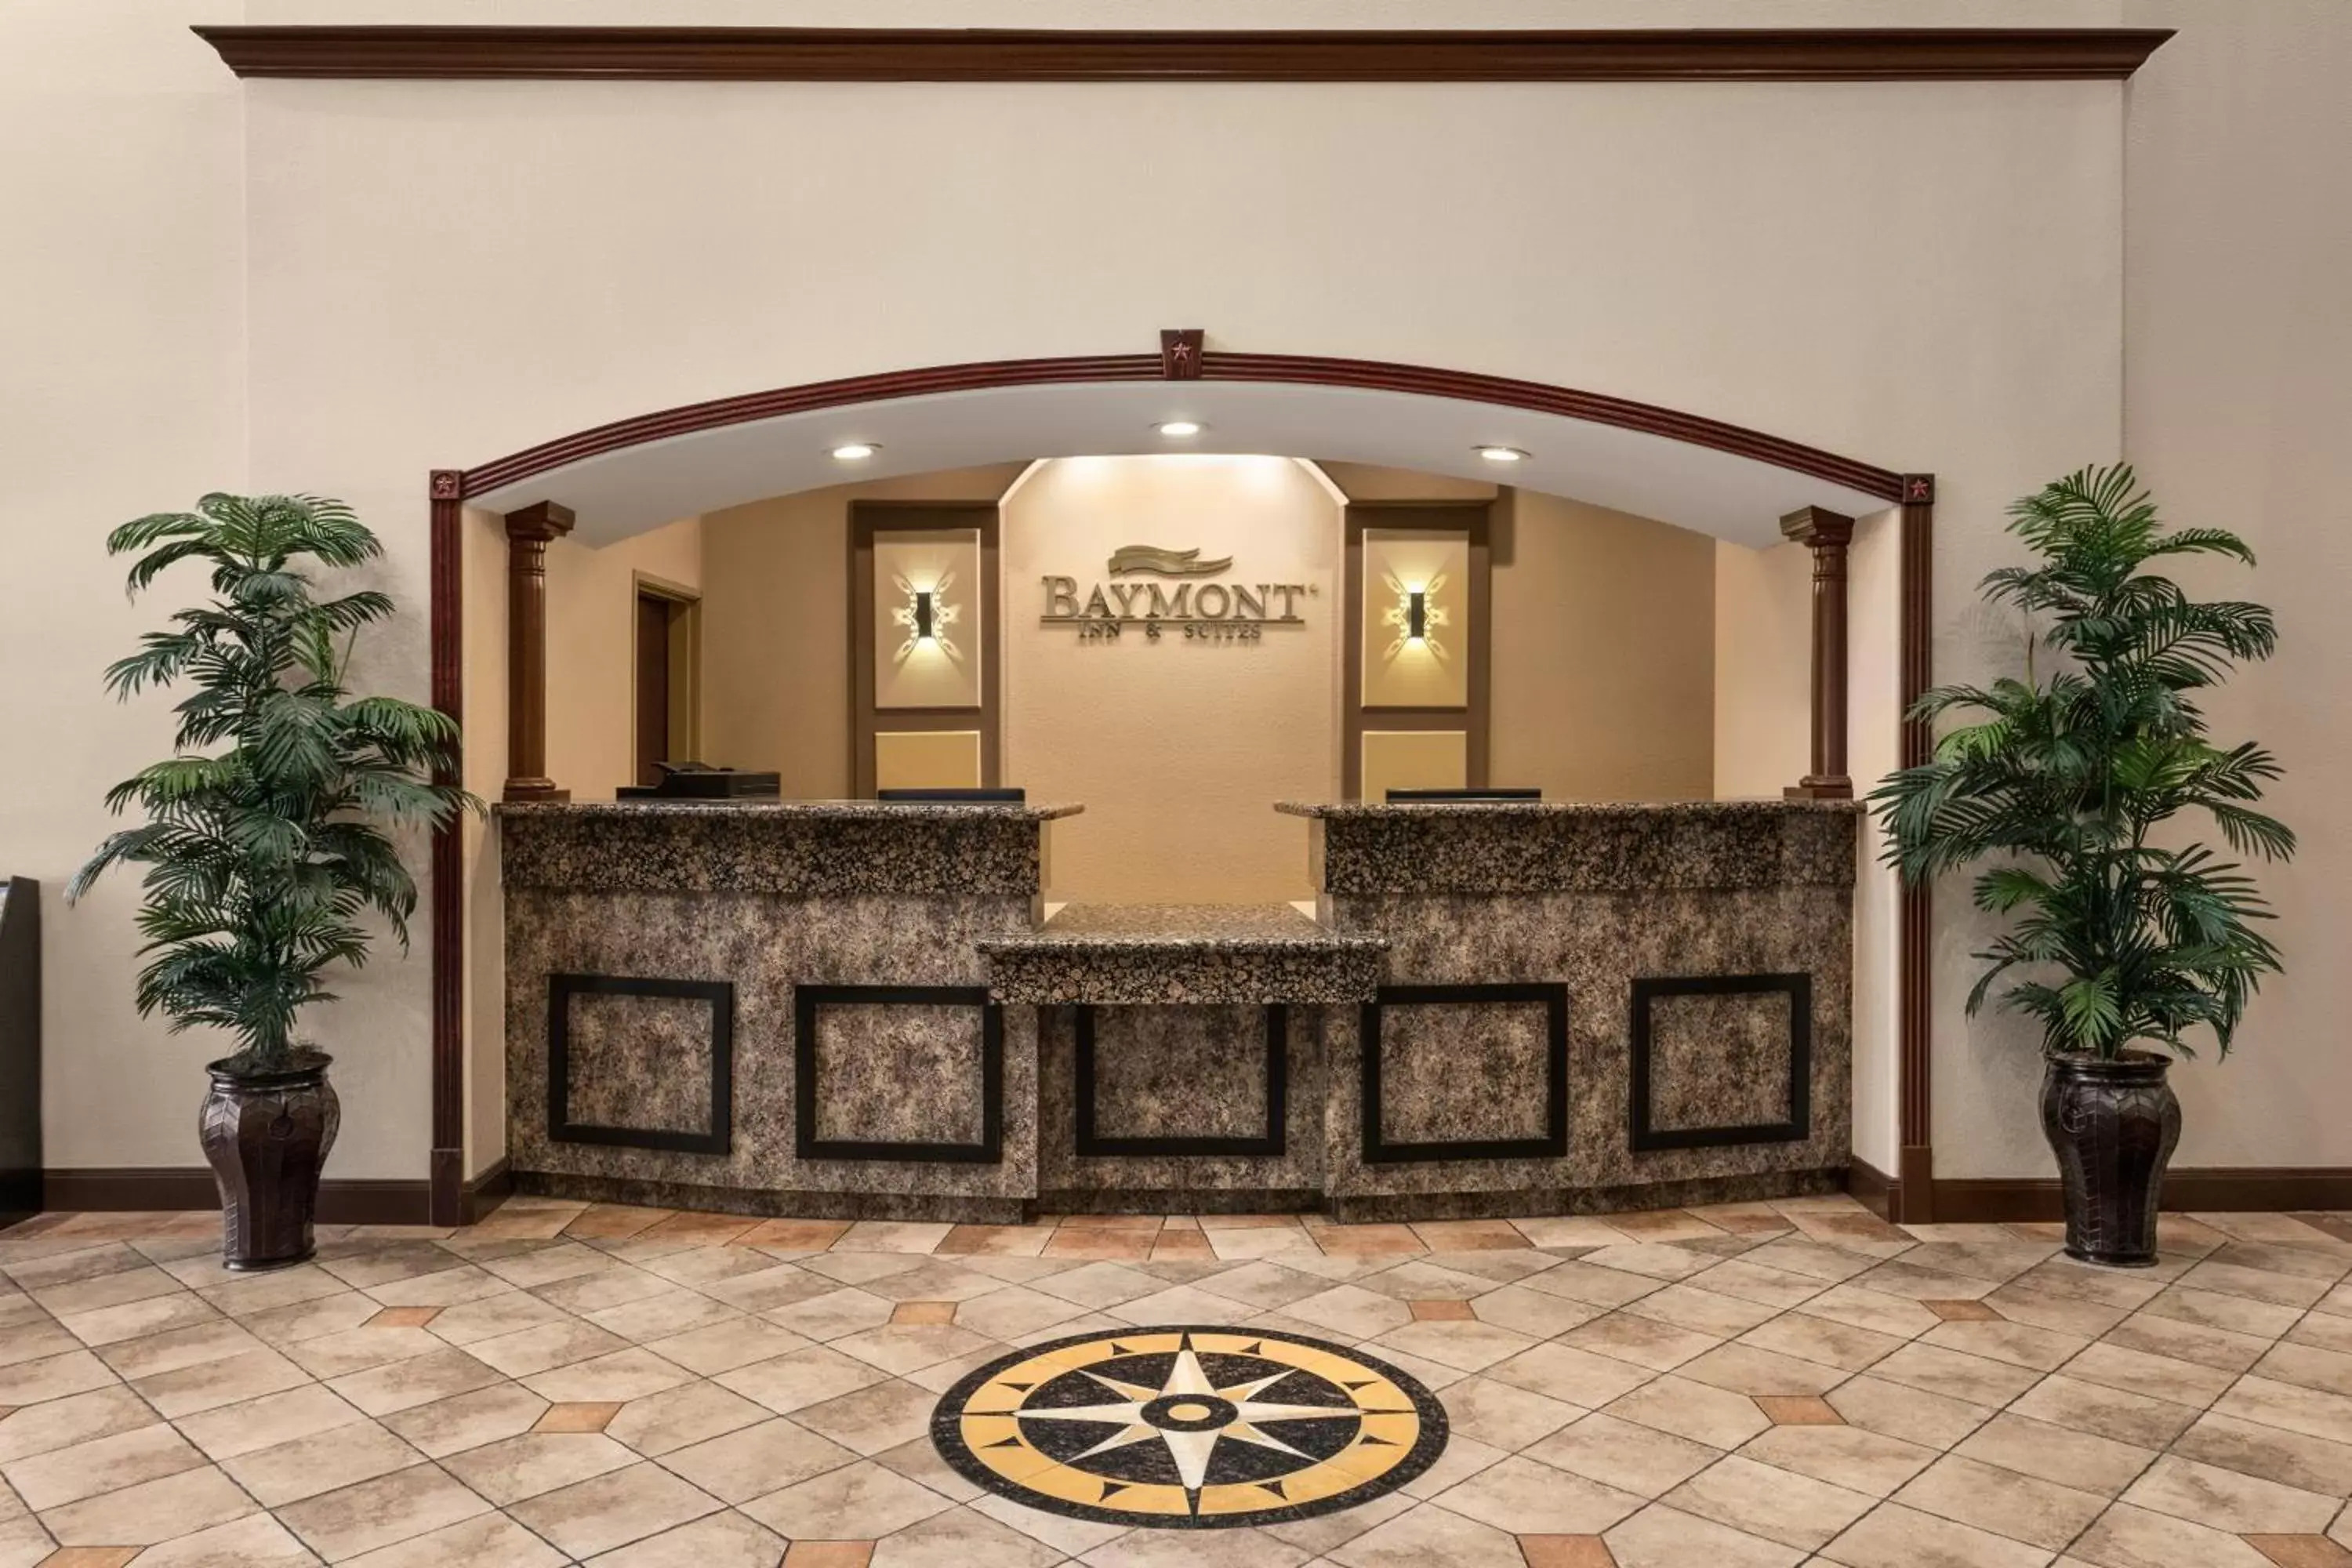 Lobby or reception, Lobby/Reception in Baymont by Wyndham Wichita Falls